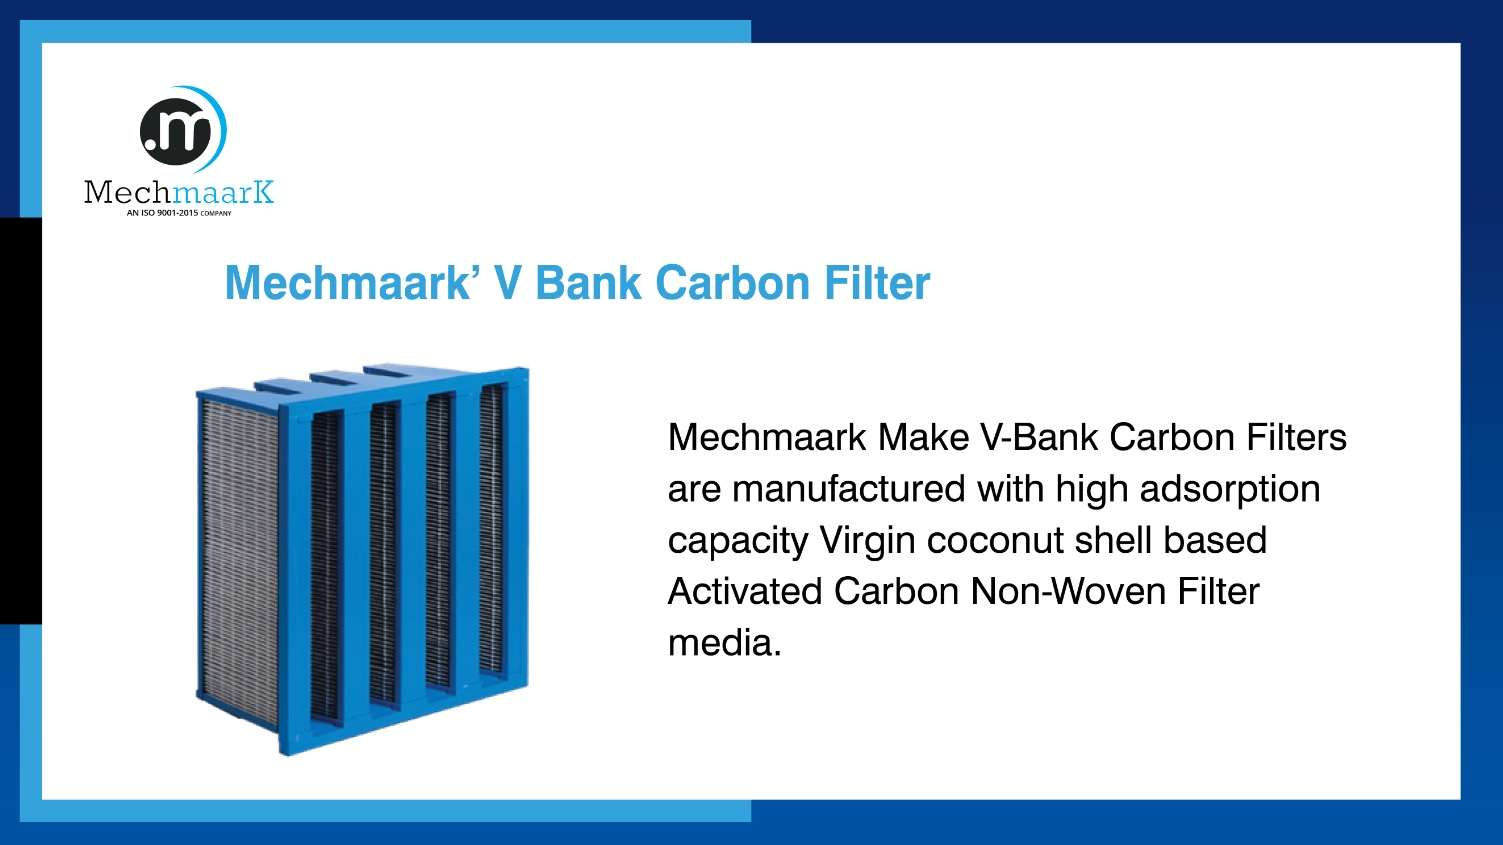 MechMaark’ V Bank Carbon Filter